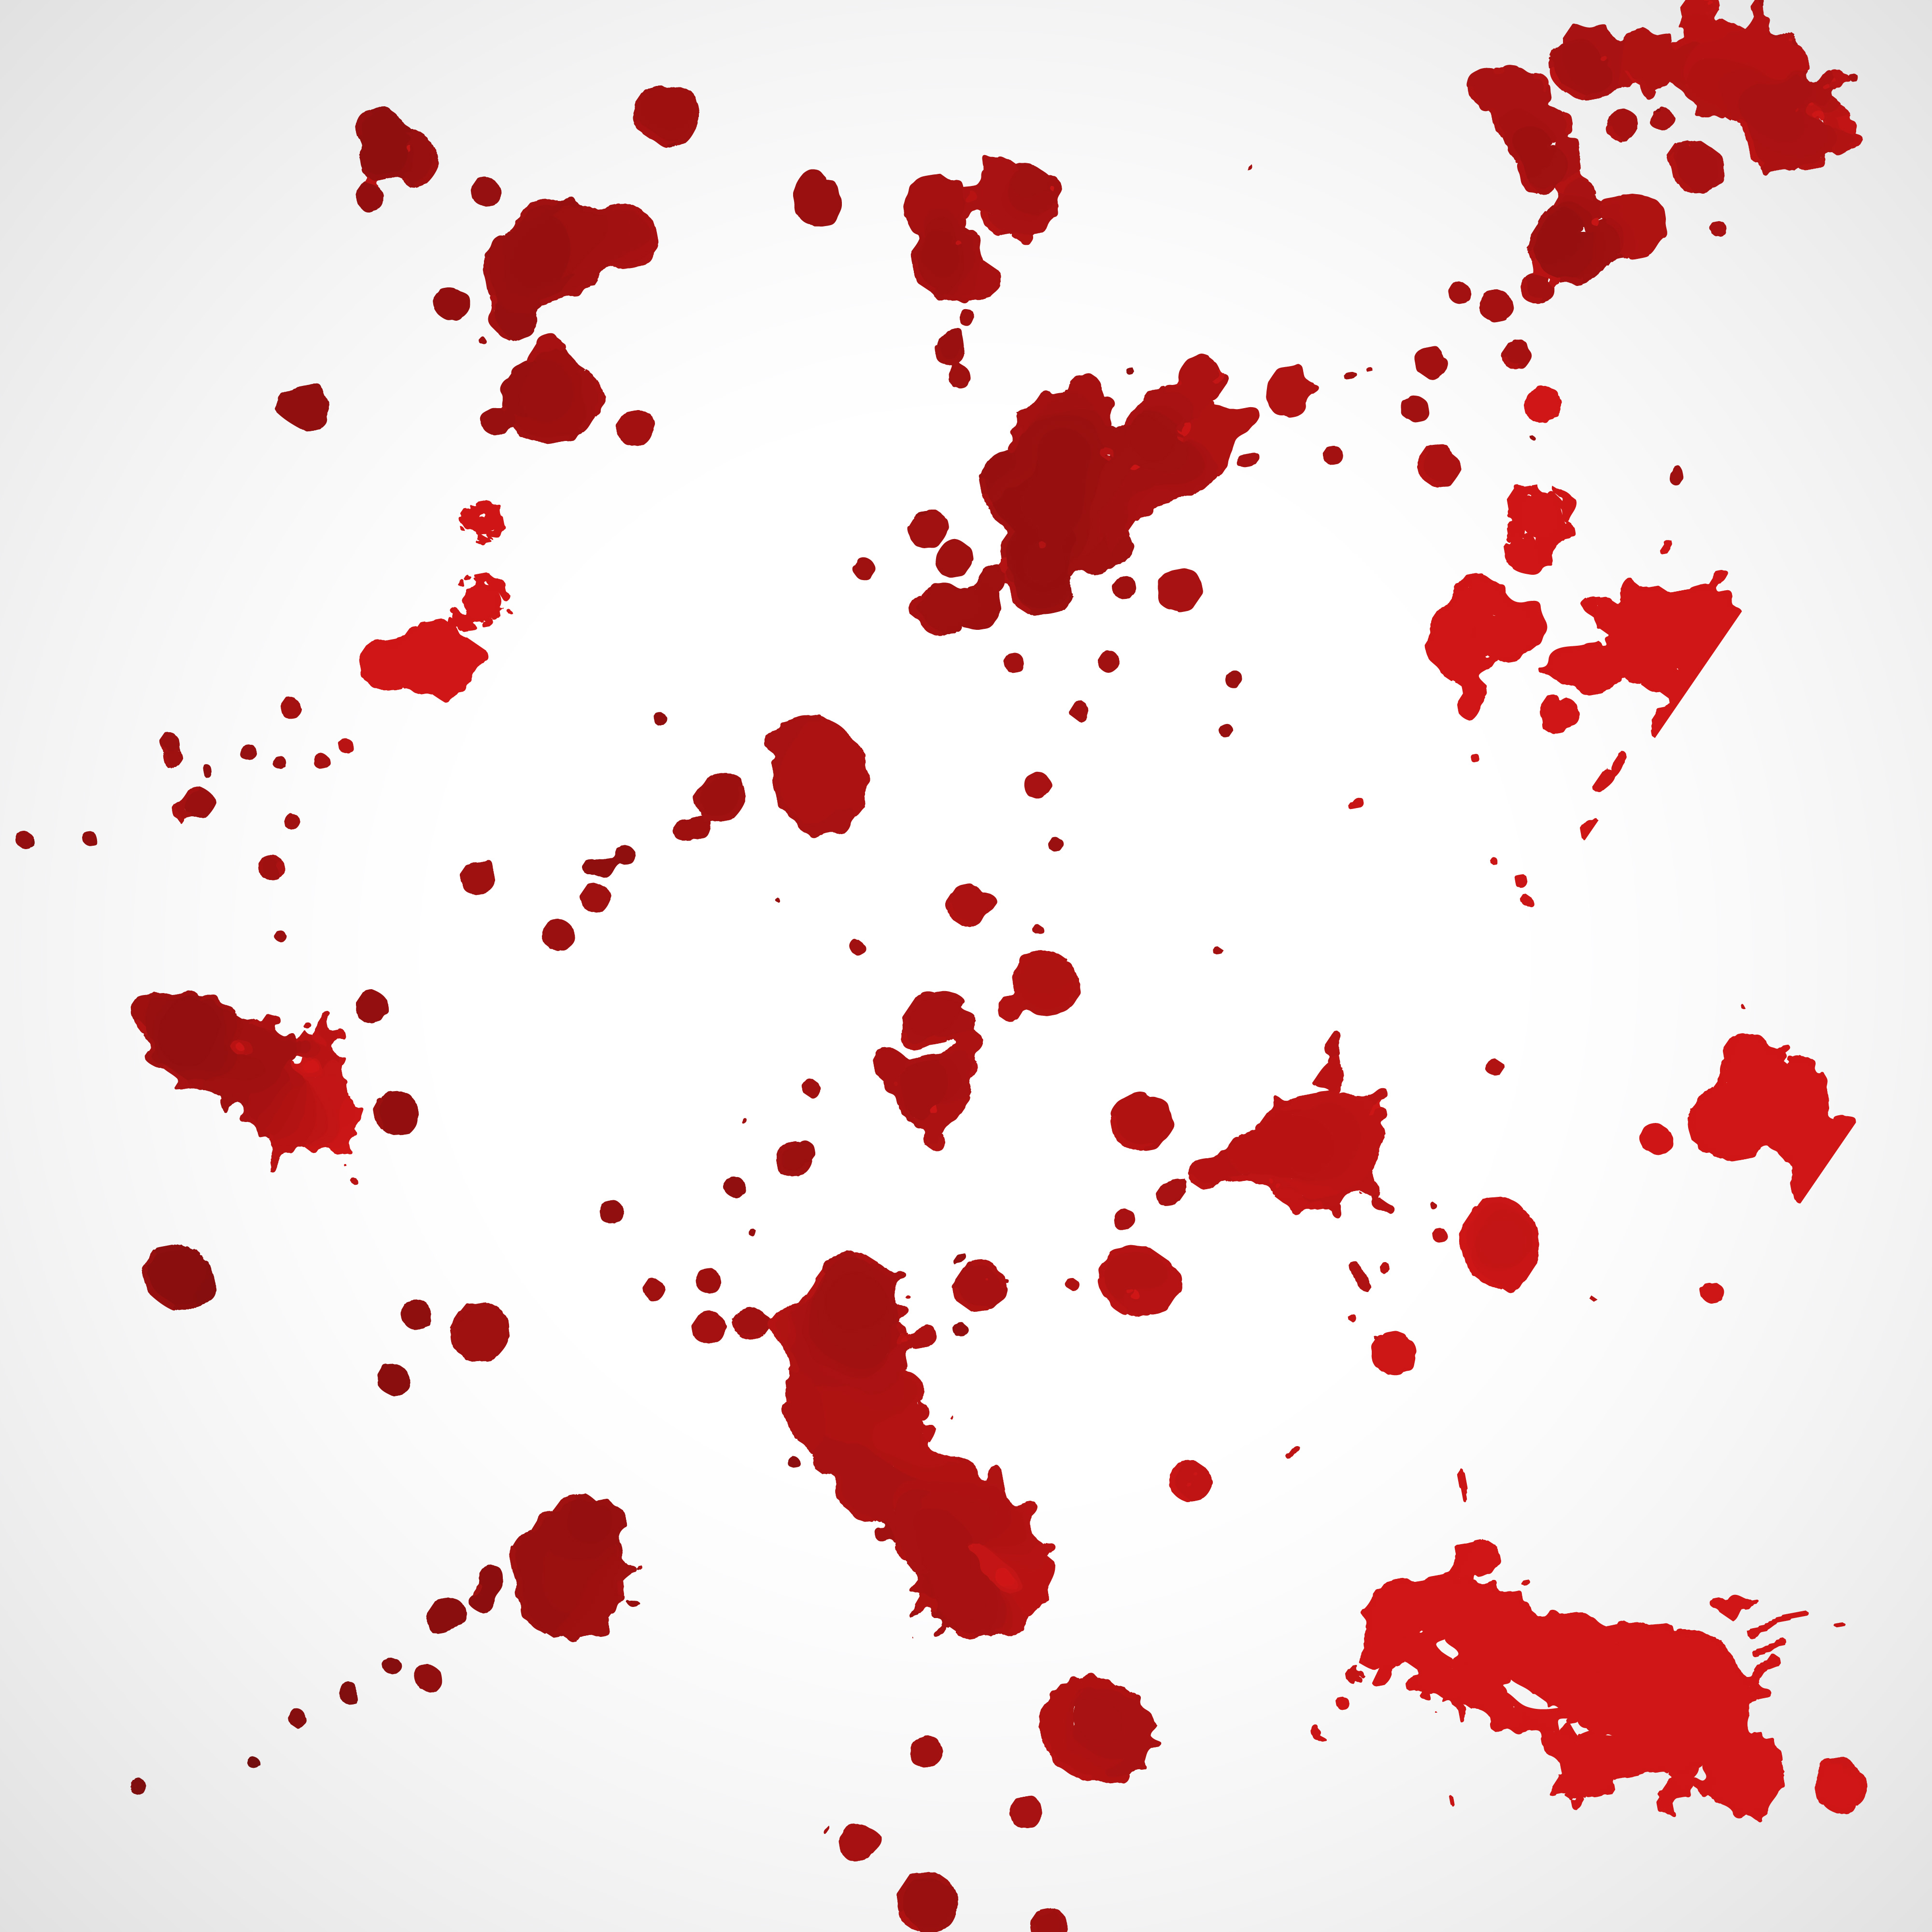 Blood Splatter Vector Art (4,216 Downloads)